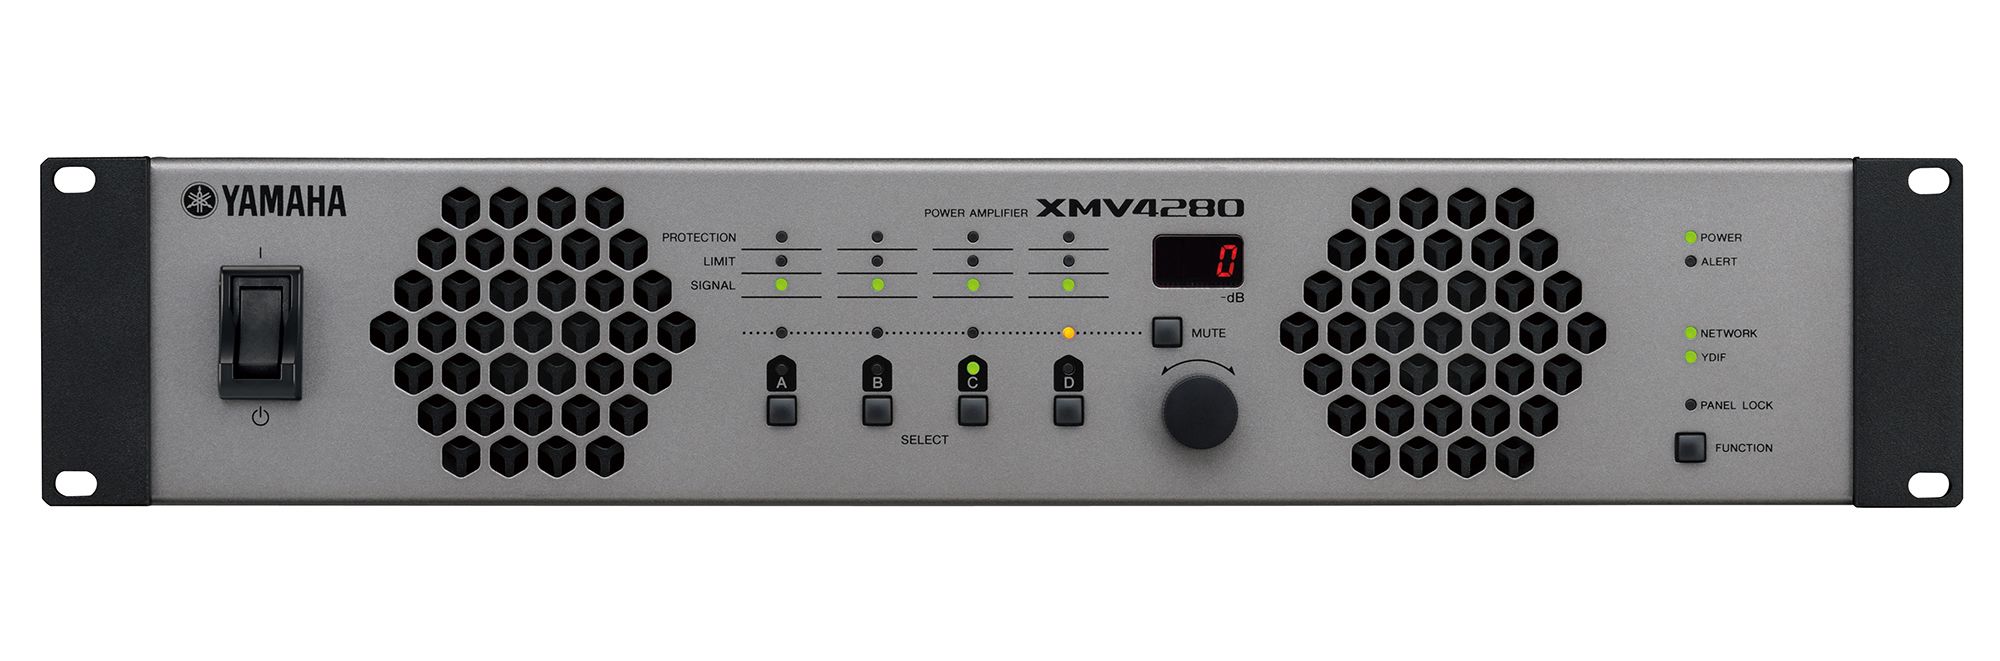 ヤマハ | XMV Series - パワーアンプ - 概要